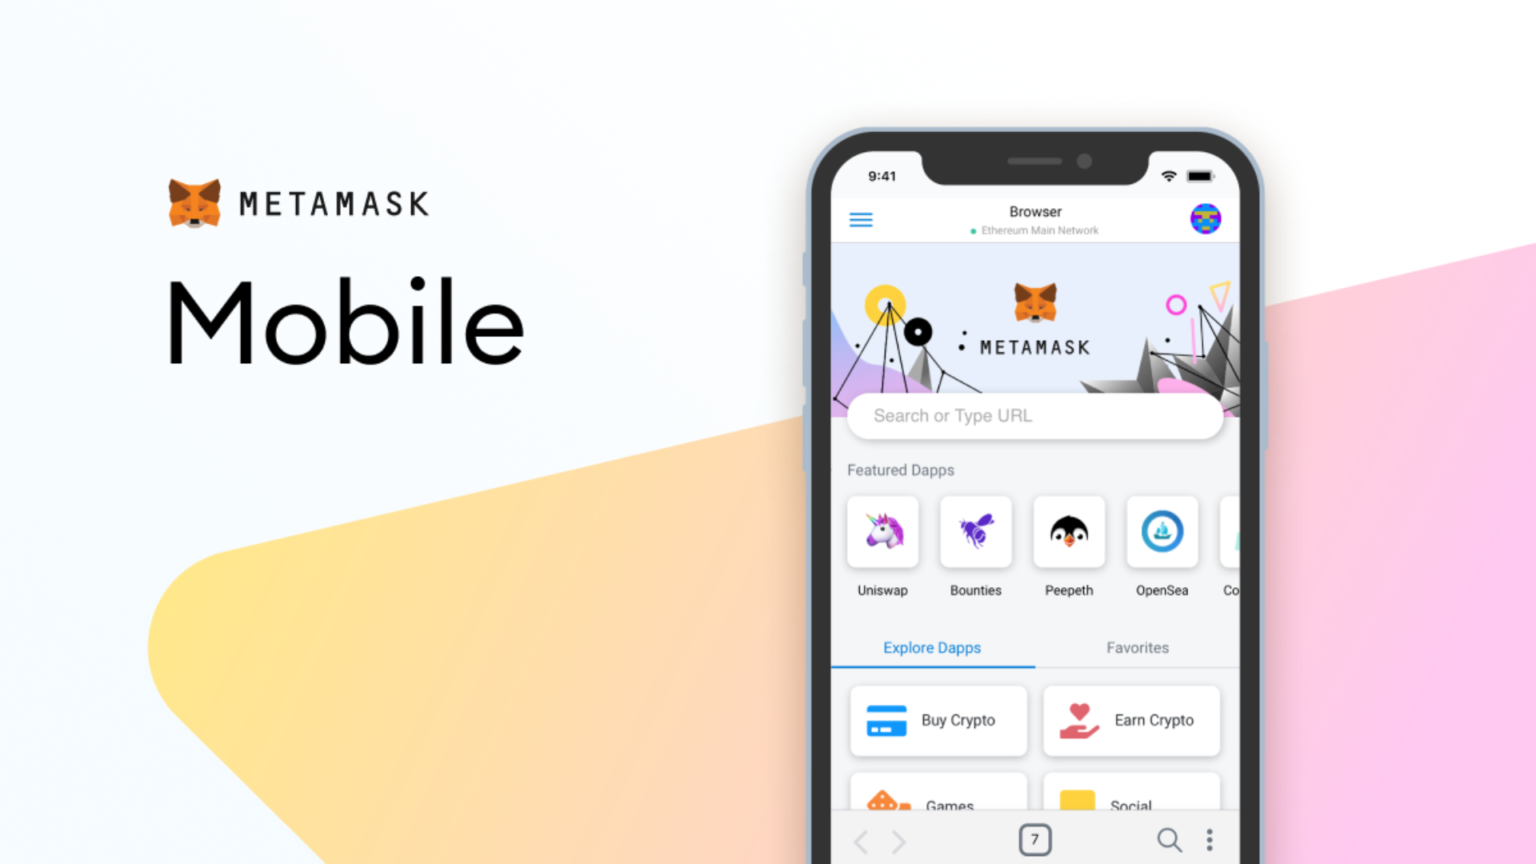 metamask-mobile-app-1536x864.png